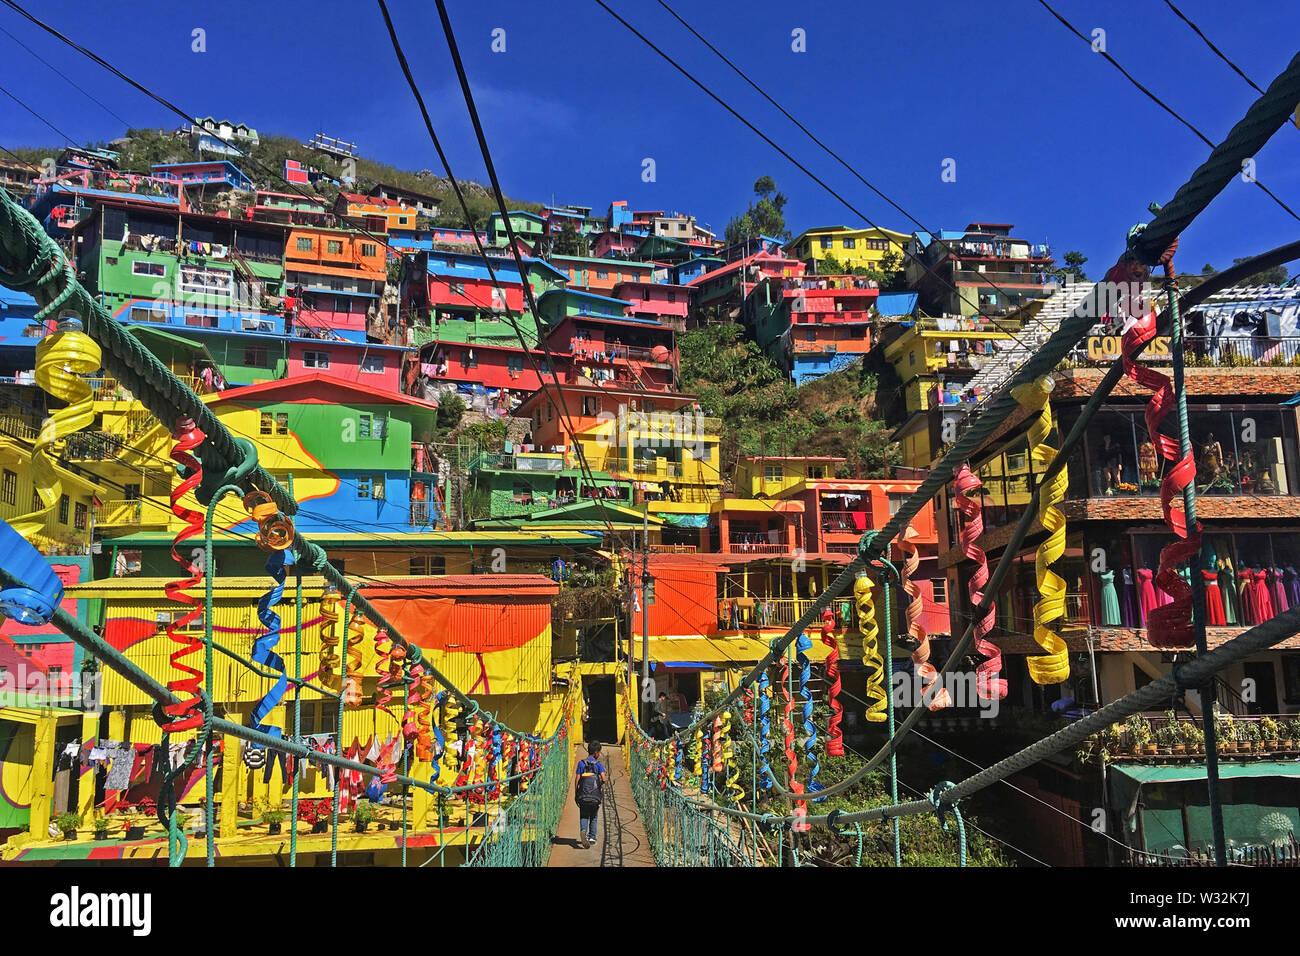 Die Farben der StBoSa oder der StoBoSa Hang Wohnungen Artwork, eine Gemeinschaft, die Kunstwerke von der Tam-awan Dorf Group, ist ein Reiseziel. Stockfoto